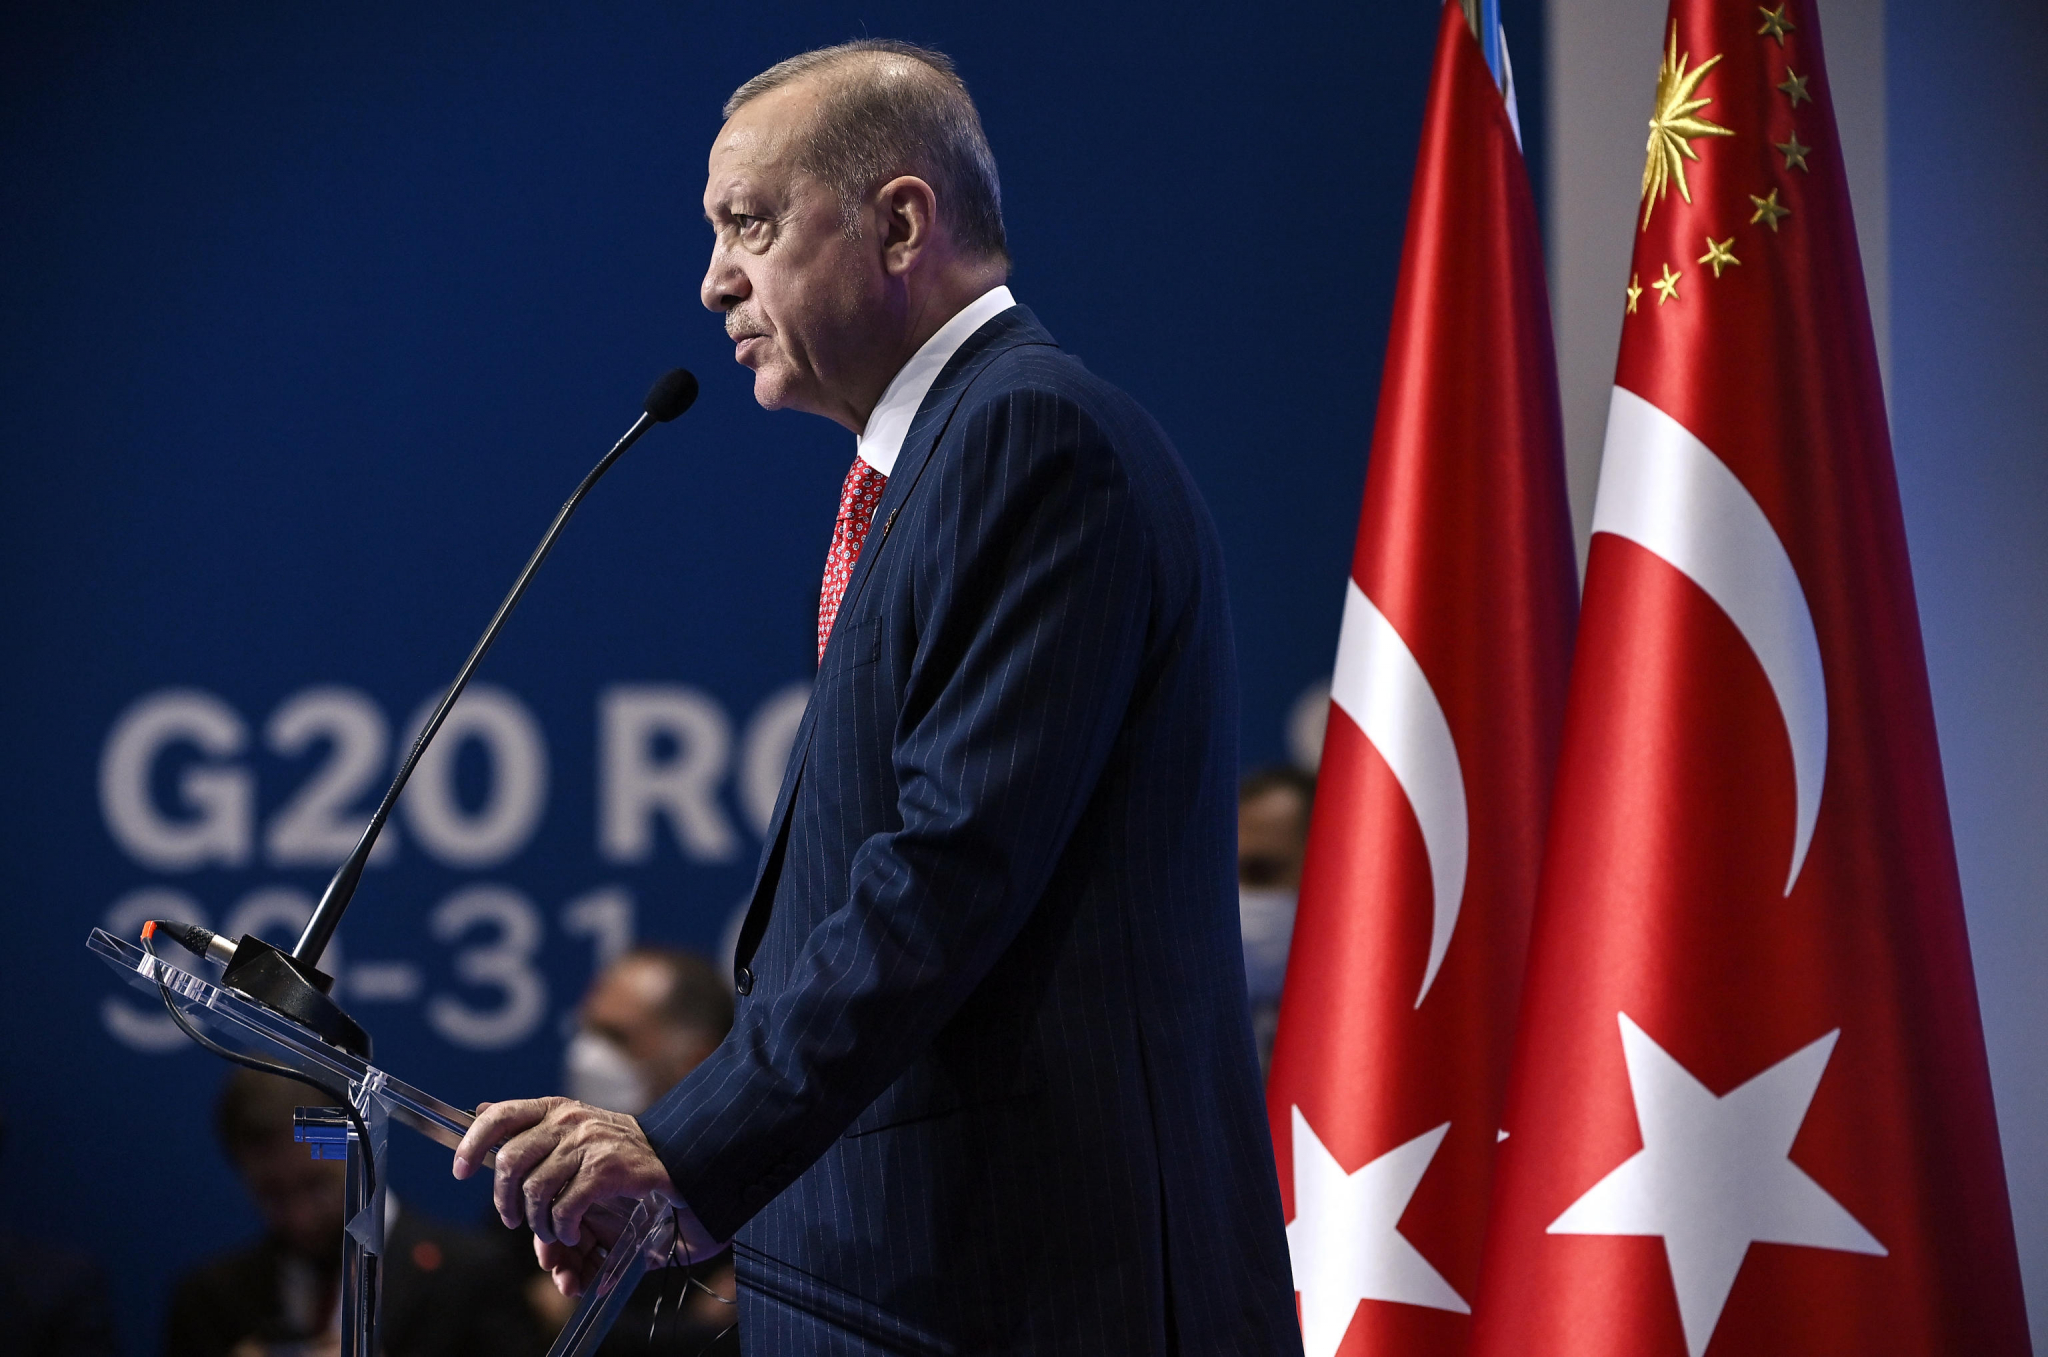 PRELOMNI TRENUTAK U UKRAJINI? Erdogan se odmah oglasio - Ovo je važan korak!